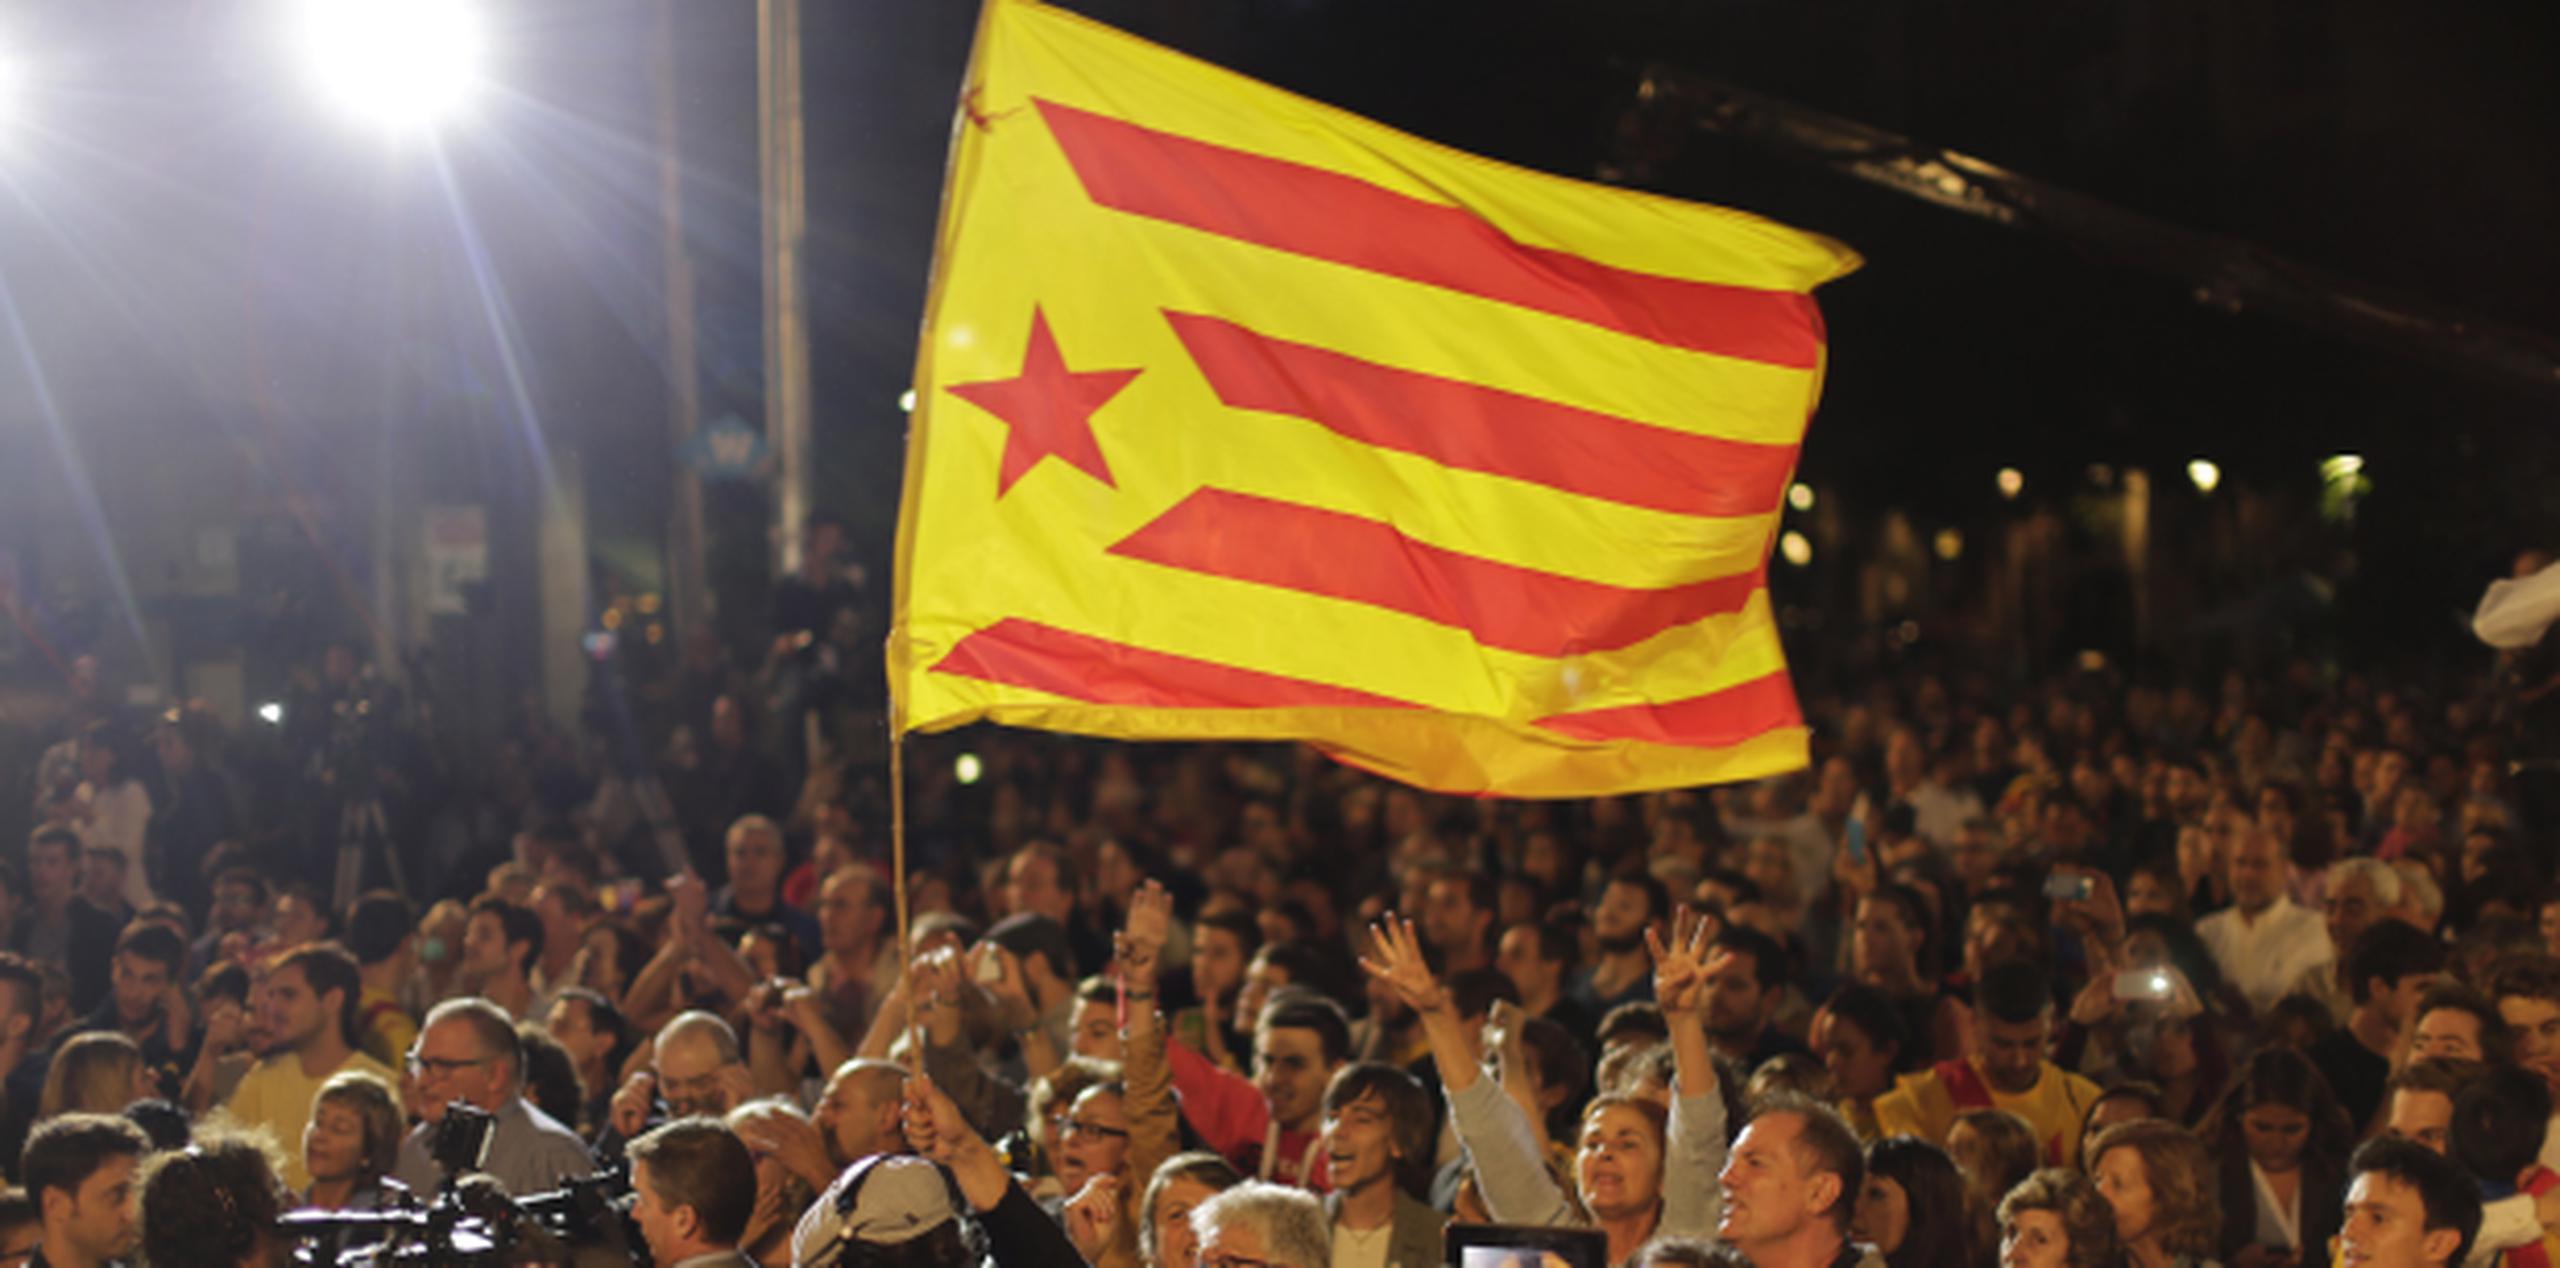 La estelada, o bandera proindependencia de Cataluña, ondea hoy en manifestaciones de partidarios de la secesión. (AP)